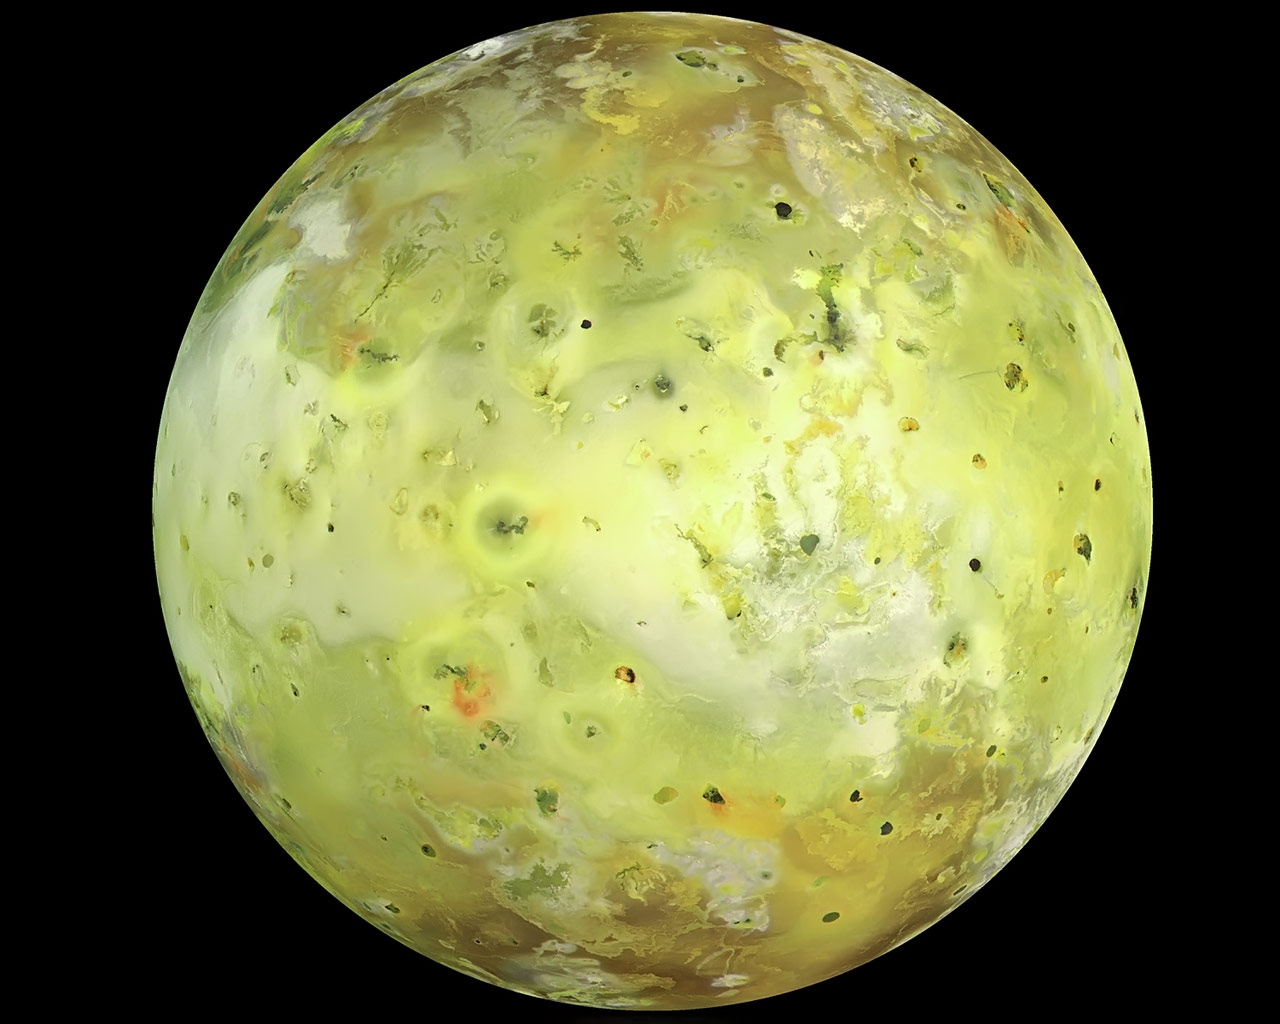 Jupiter Moon Io